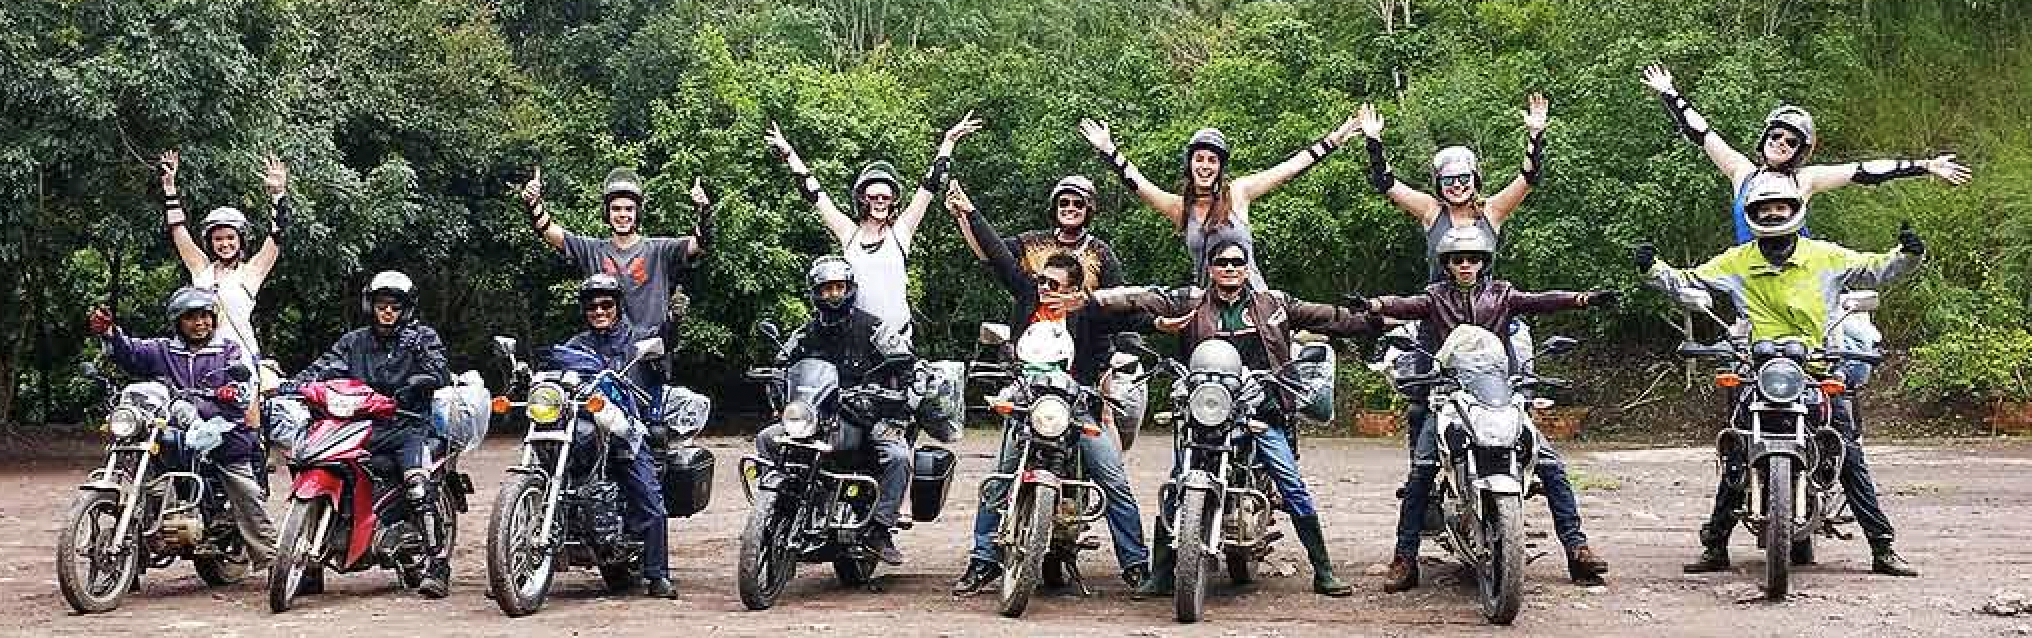 Hanoi Easy Rider Tour